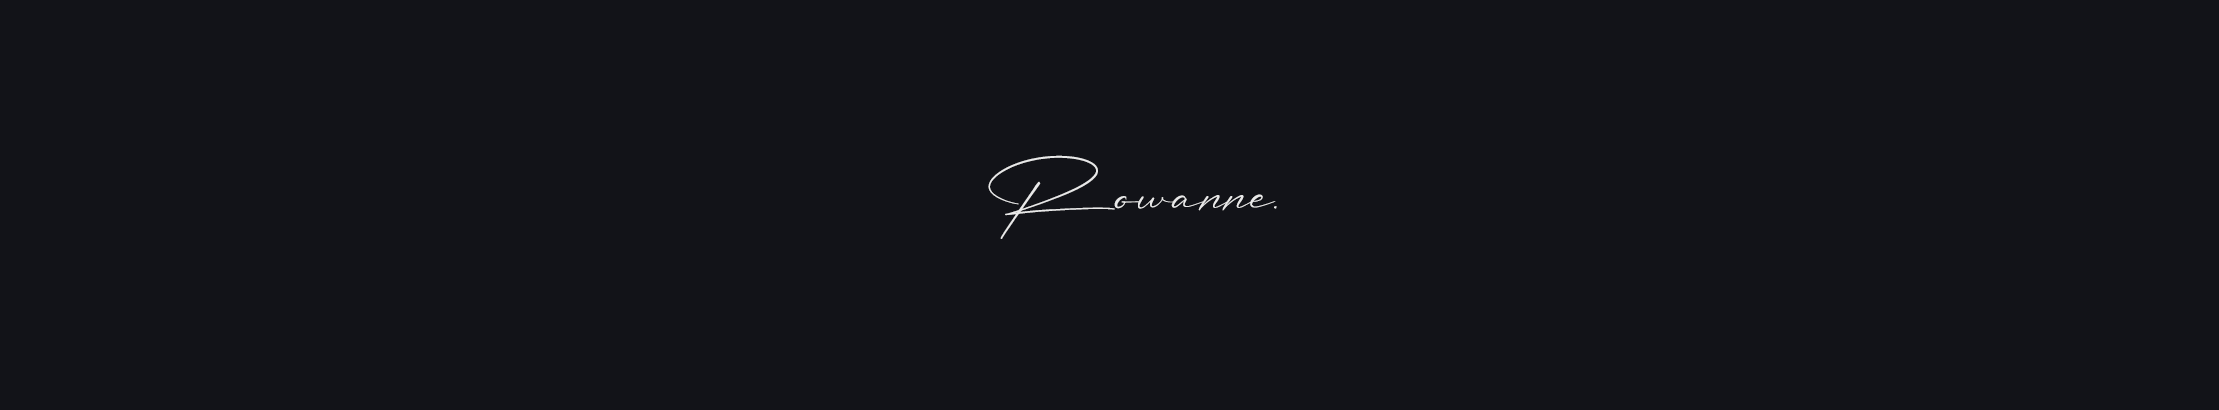 Rowanne A.'s profile banner